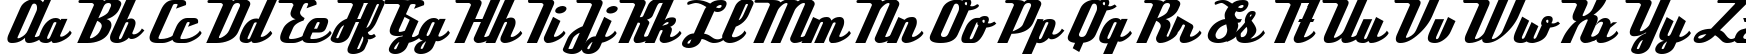 Пример написания английского алфавита шрифтом Deftone Stylus